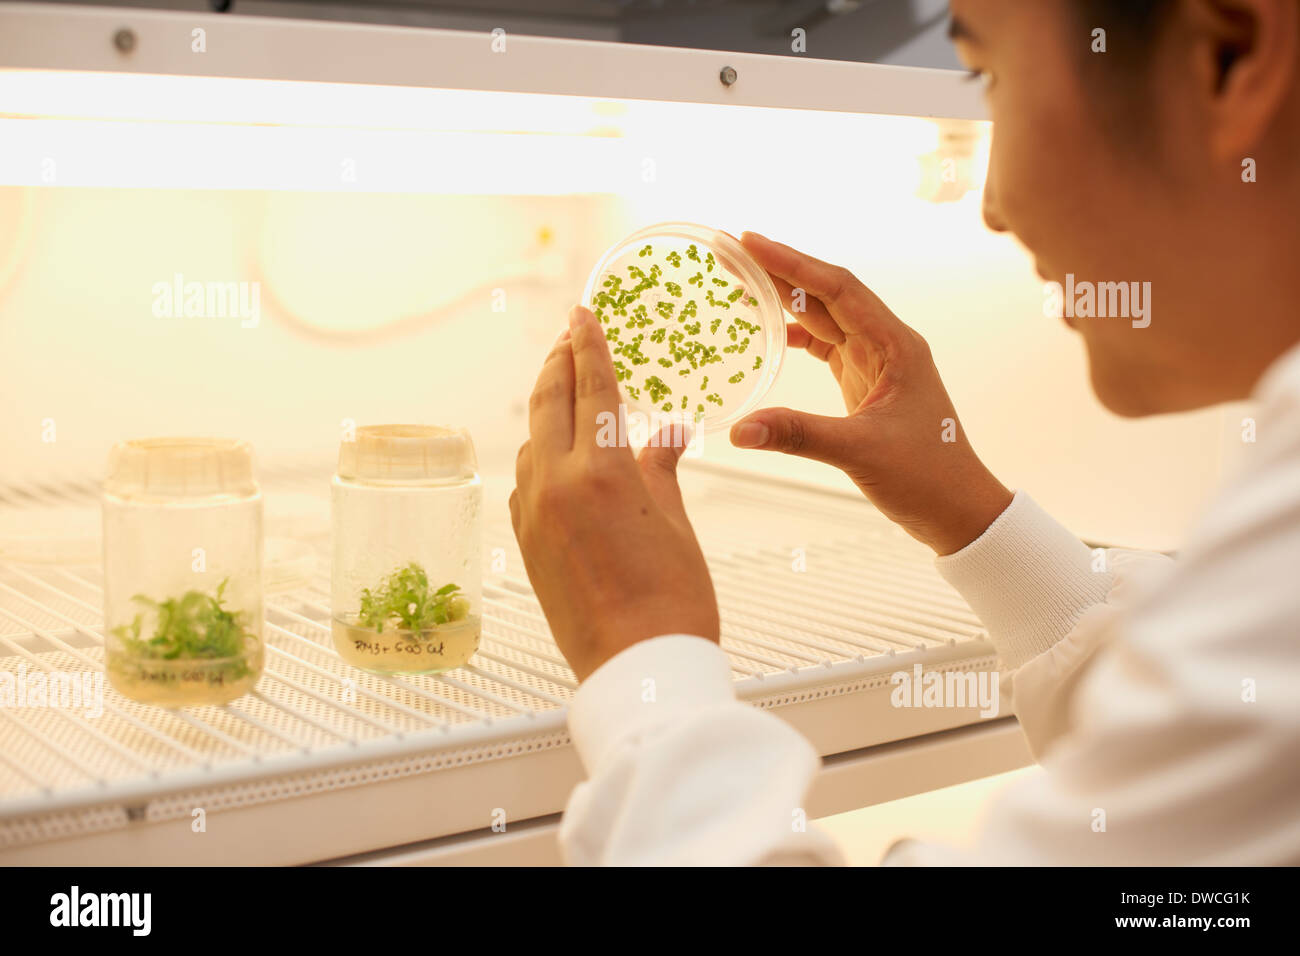 Female scientist examining plant sample in petri dish Stock Photo